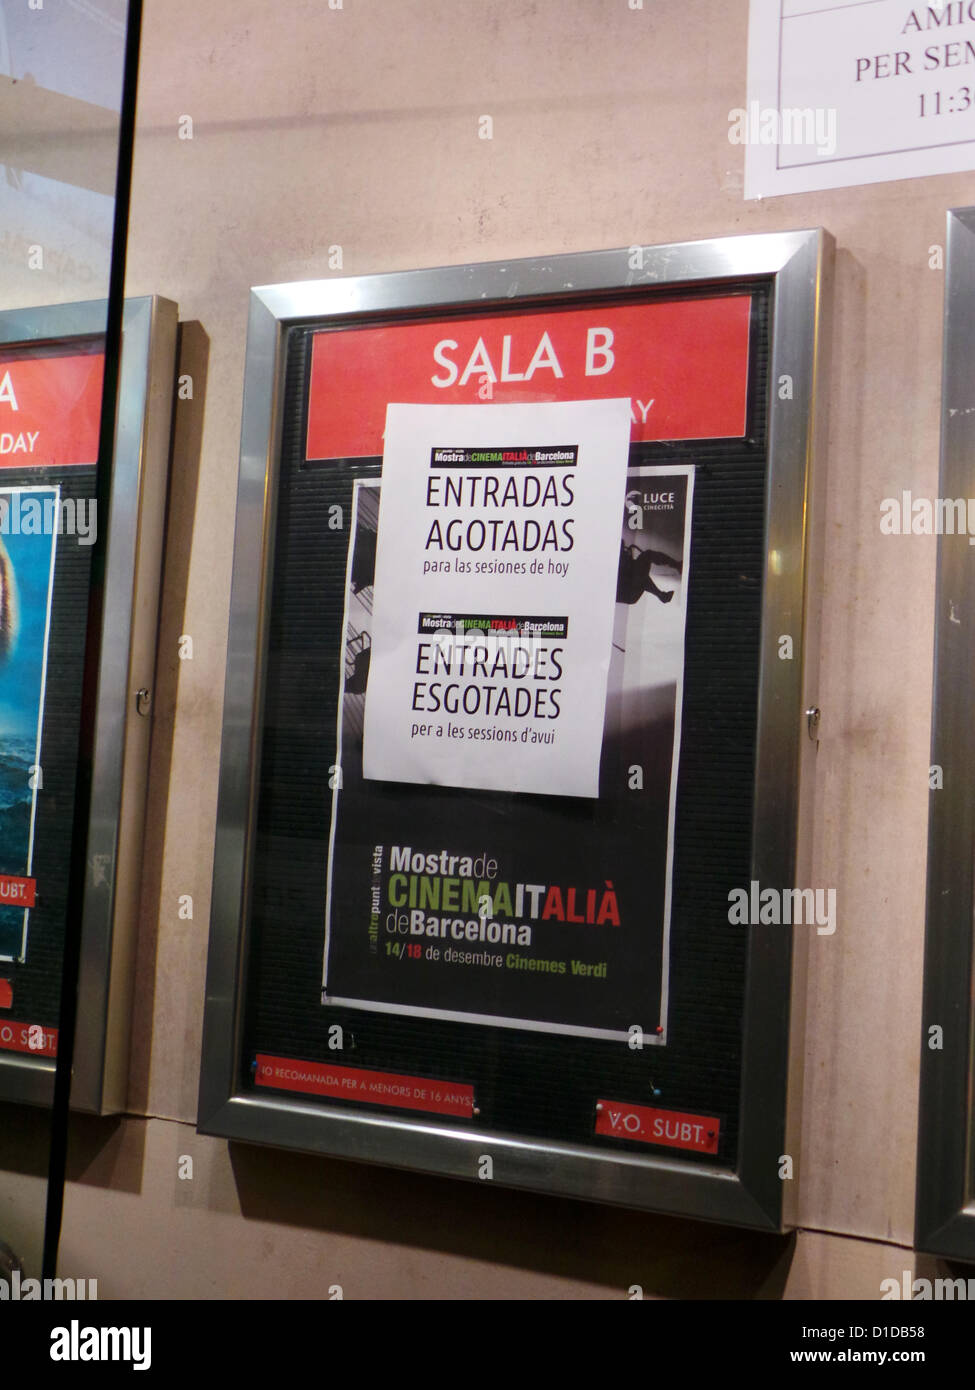 Der Filmemacher Susanna Nicchiaparelli präsentiert am 16. Dezember um Medikamente Verdi Barcelona seinen neuesten Film "The Scoperta Alba". Die Präsentation fand am dritten Tag der italienischen Mostra de Cinema, ausverkauften statt. Stockfoto